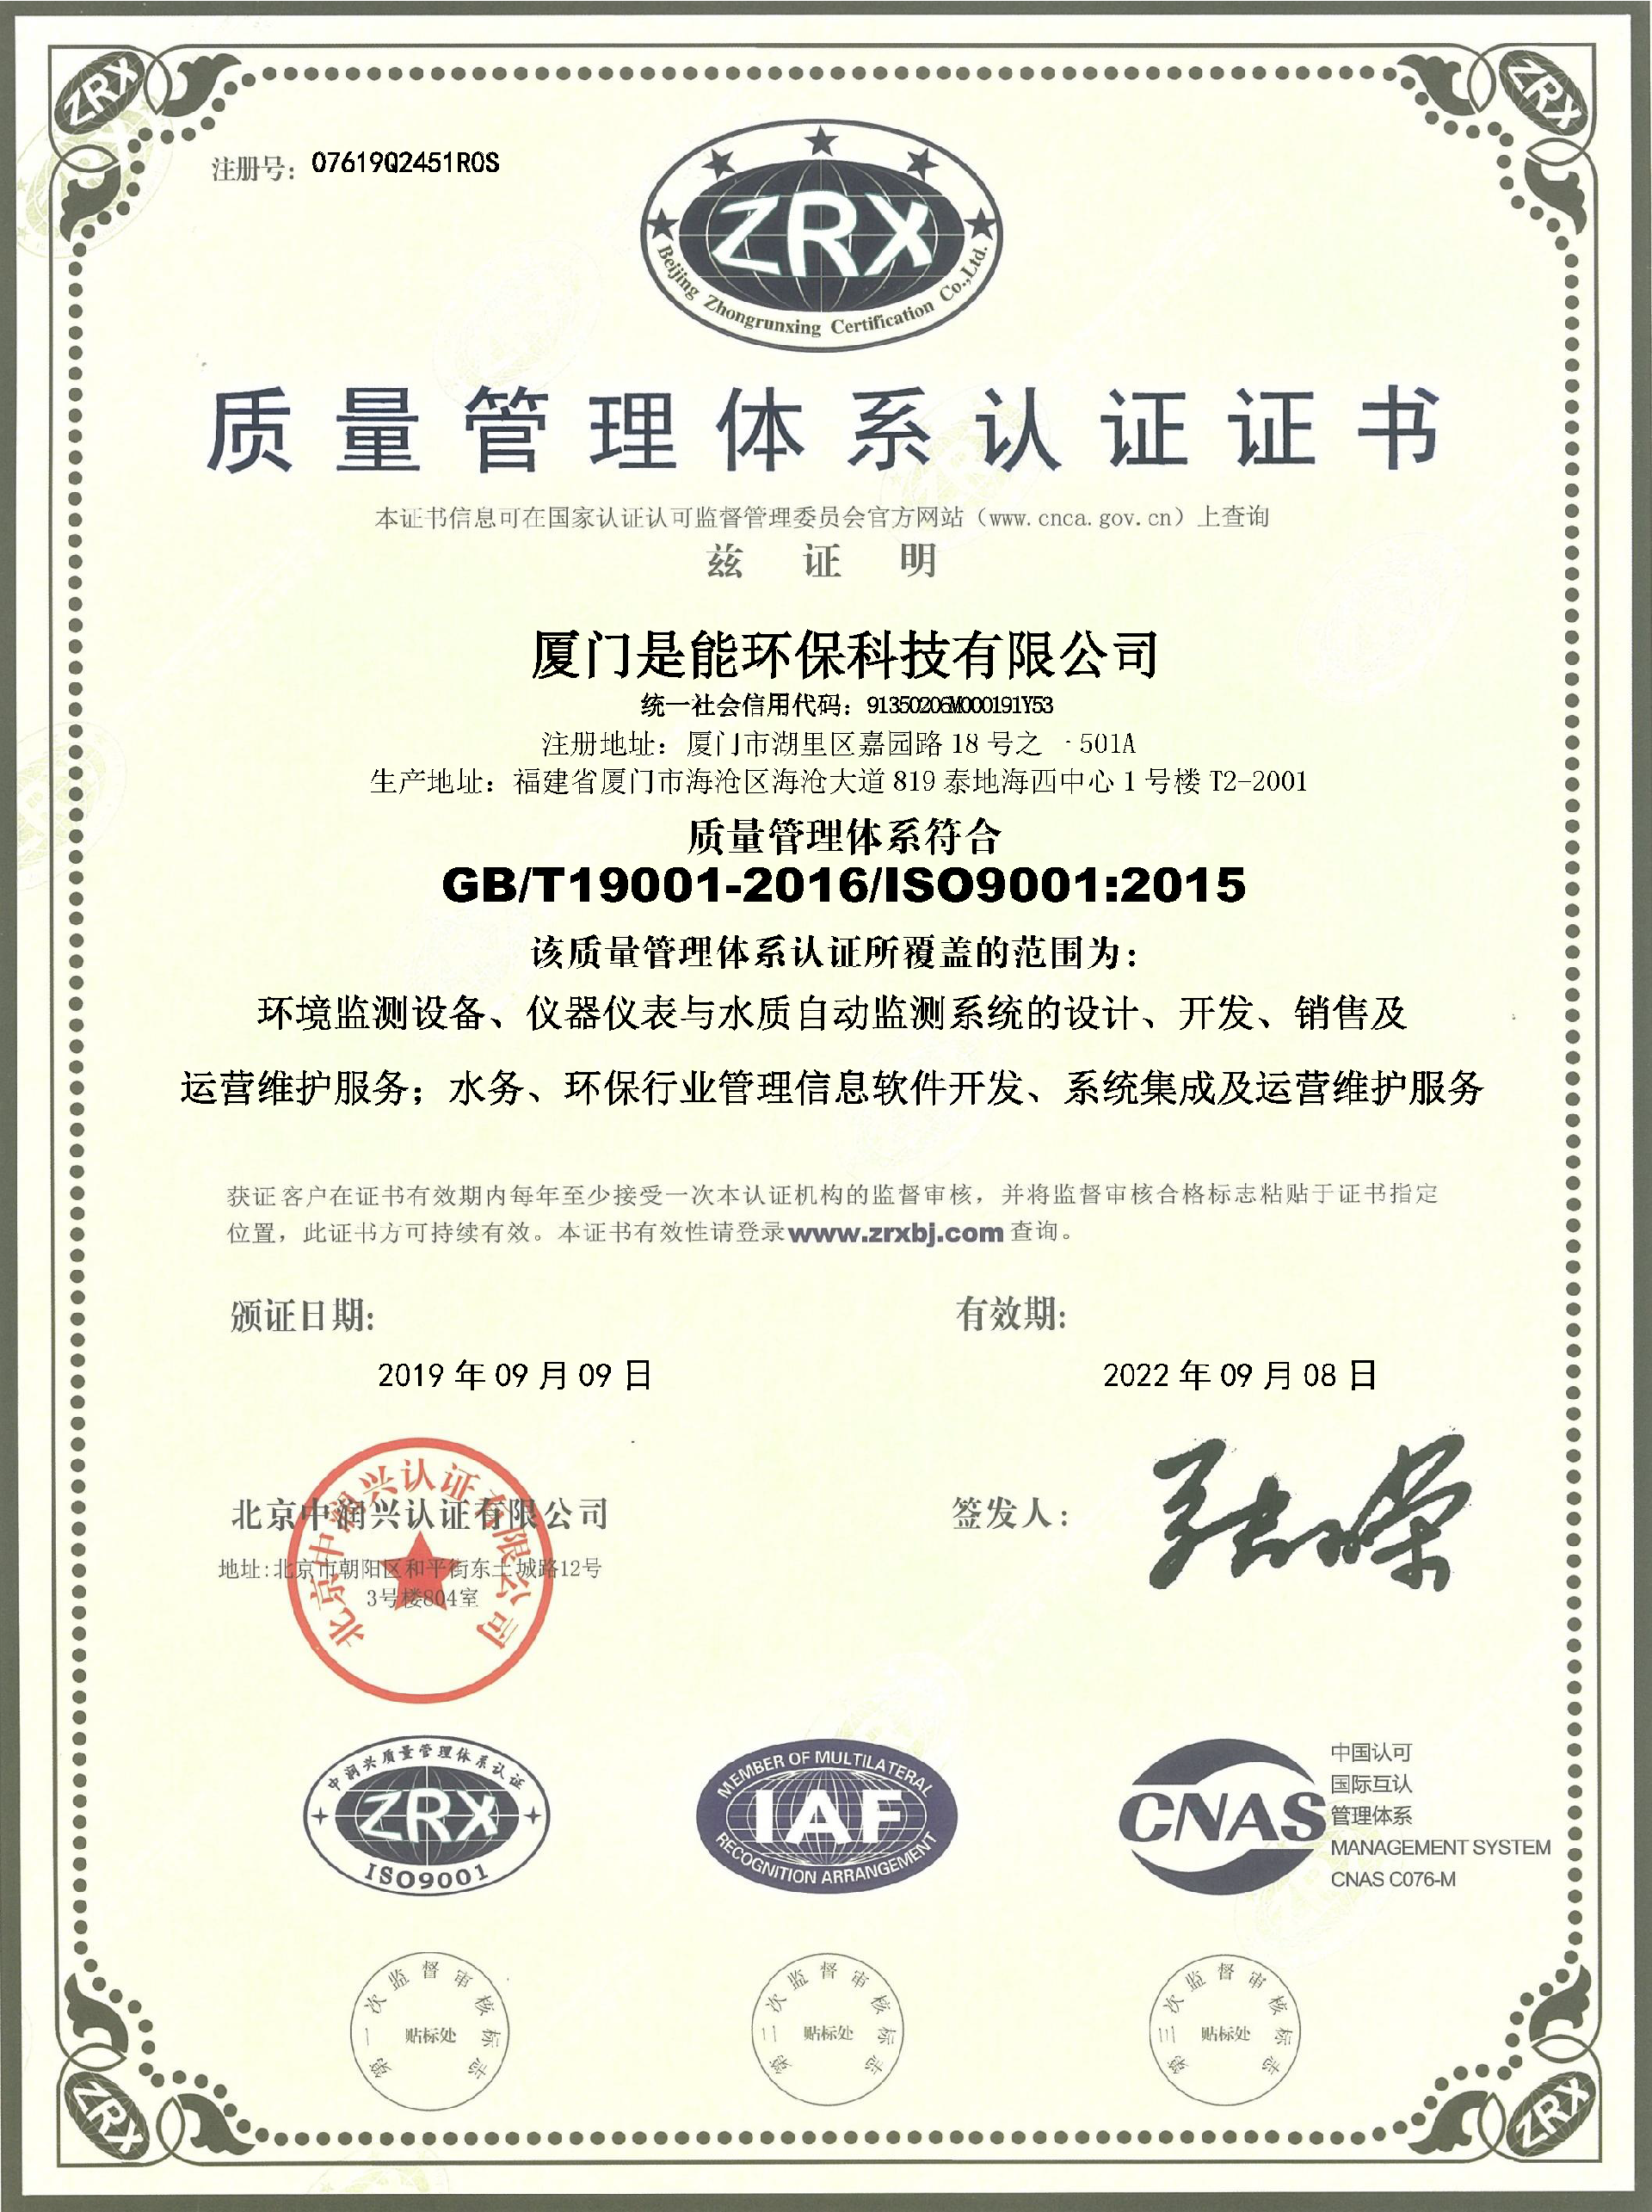 GB/T19001-2016/ISO9001:2015 质量管理体系认证